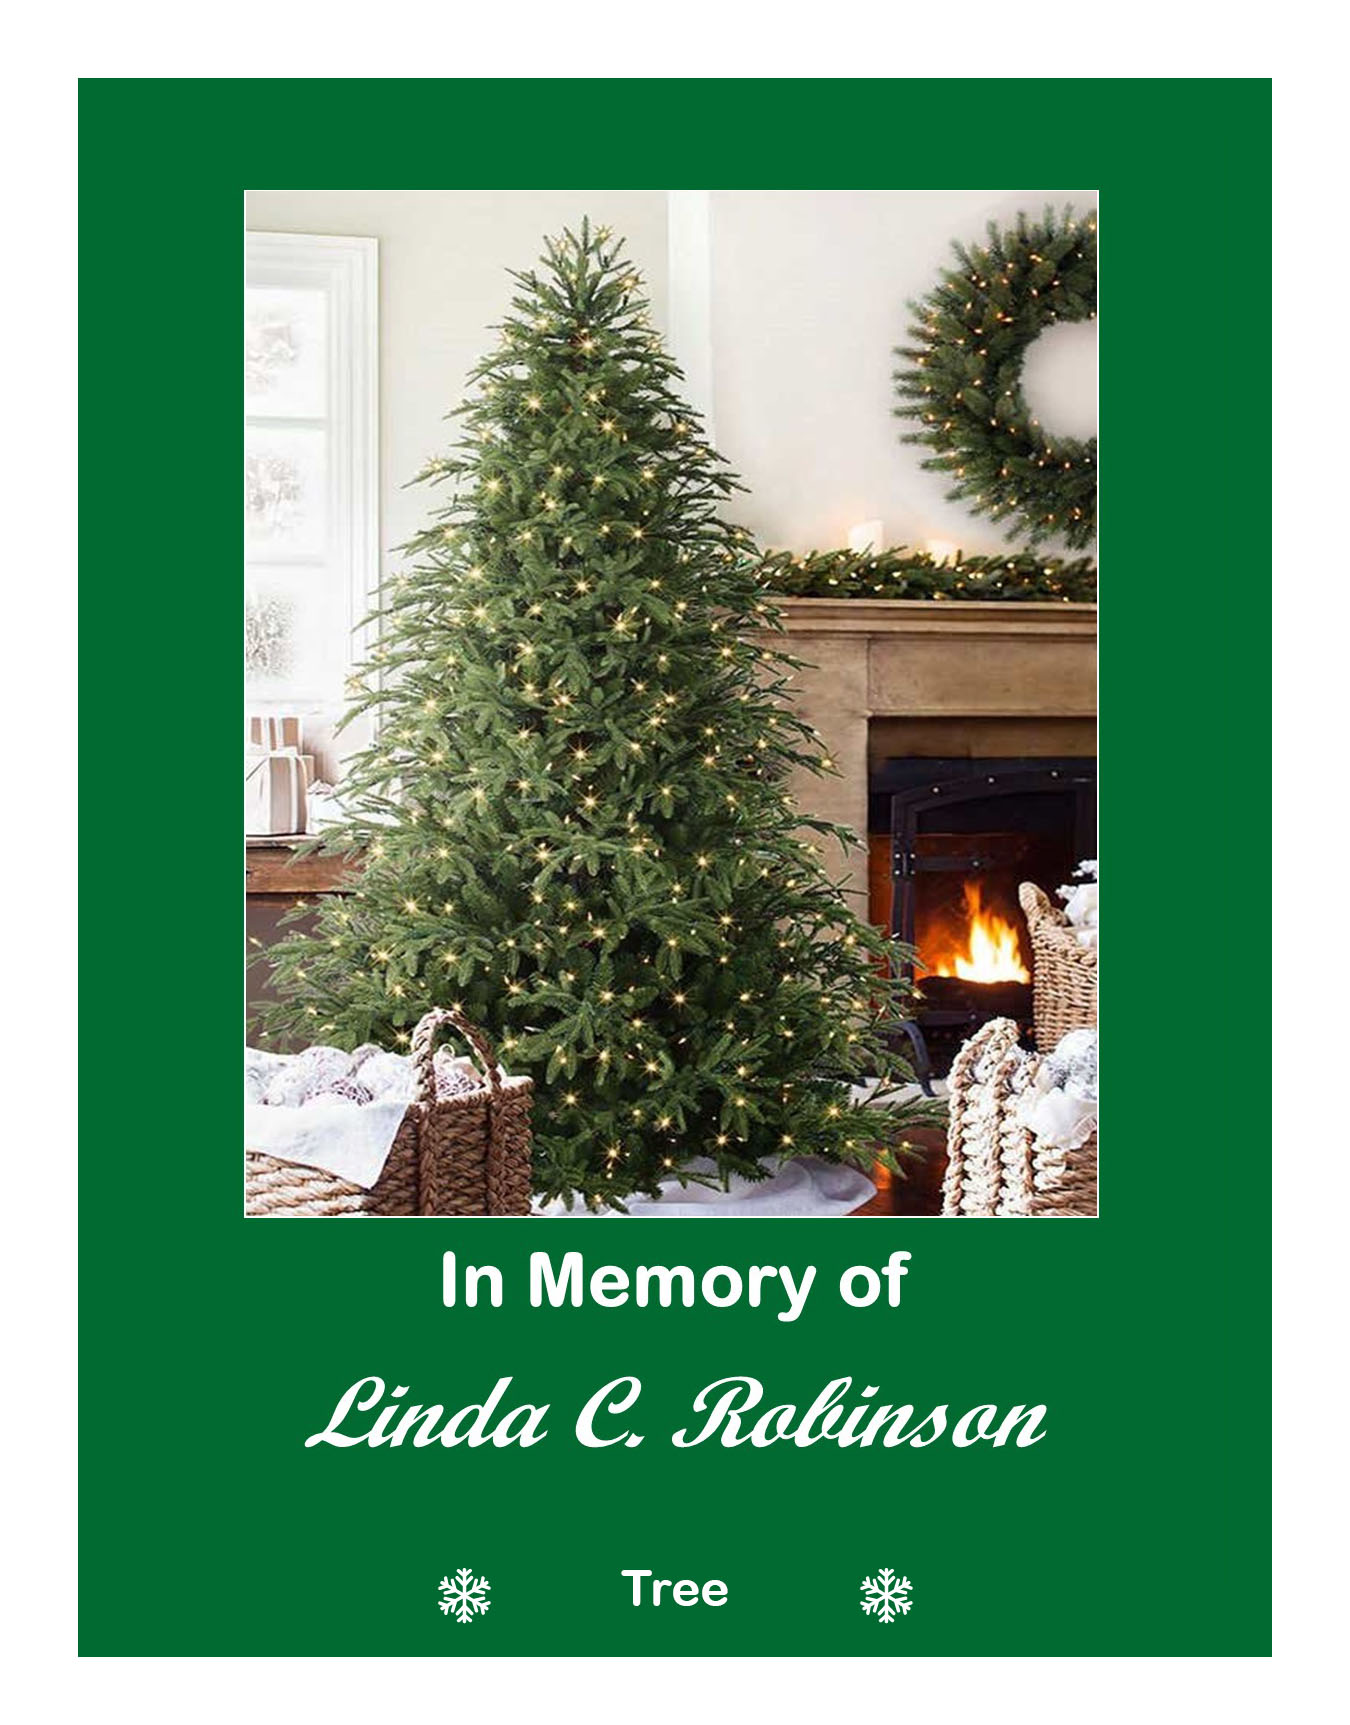 In memory of Linda C. Robinson